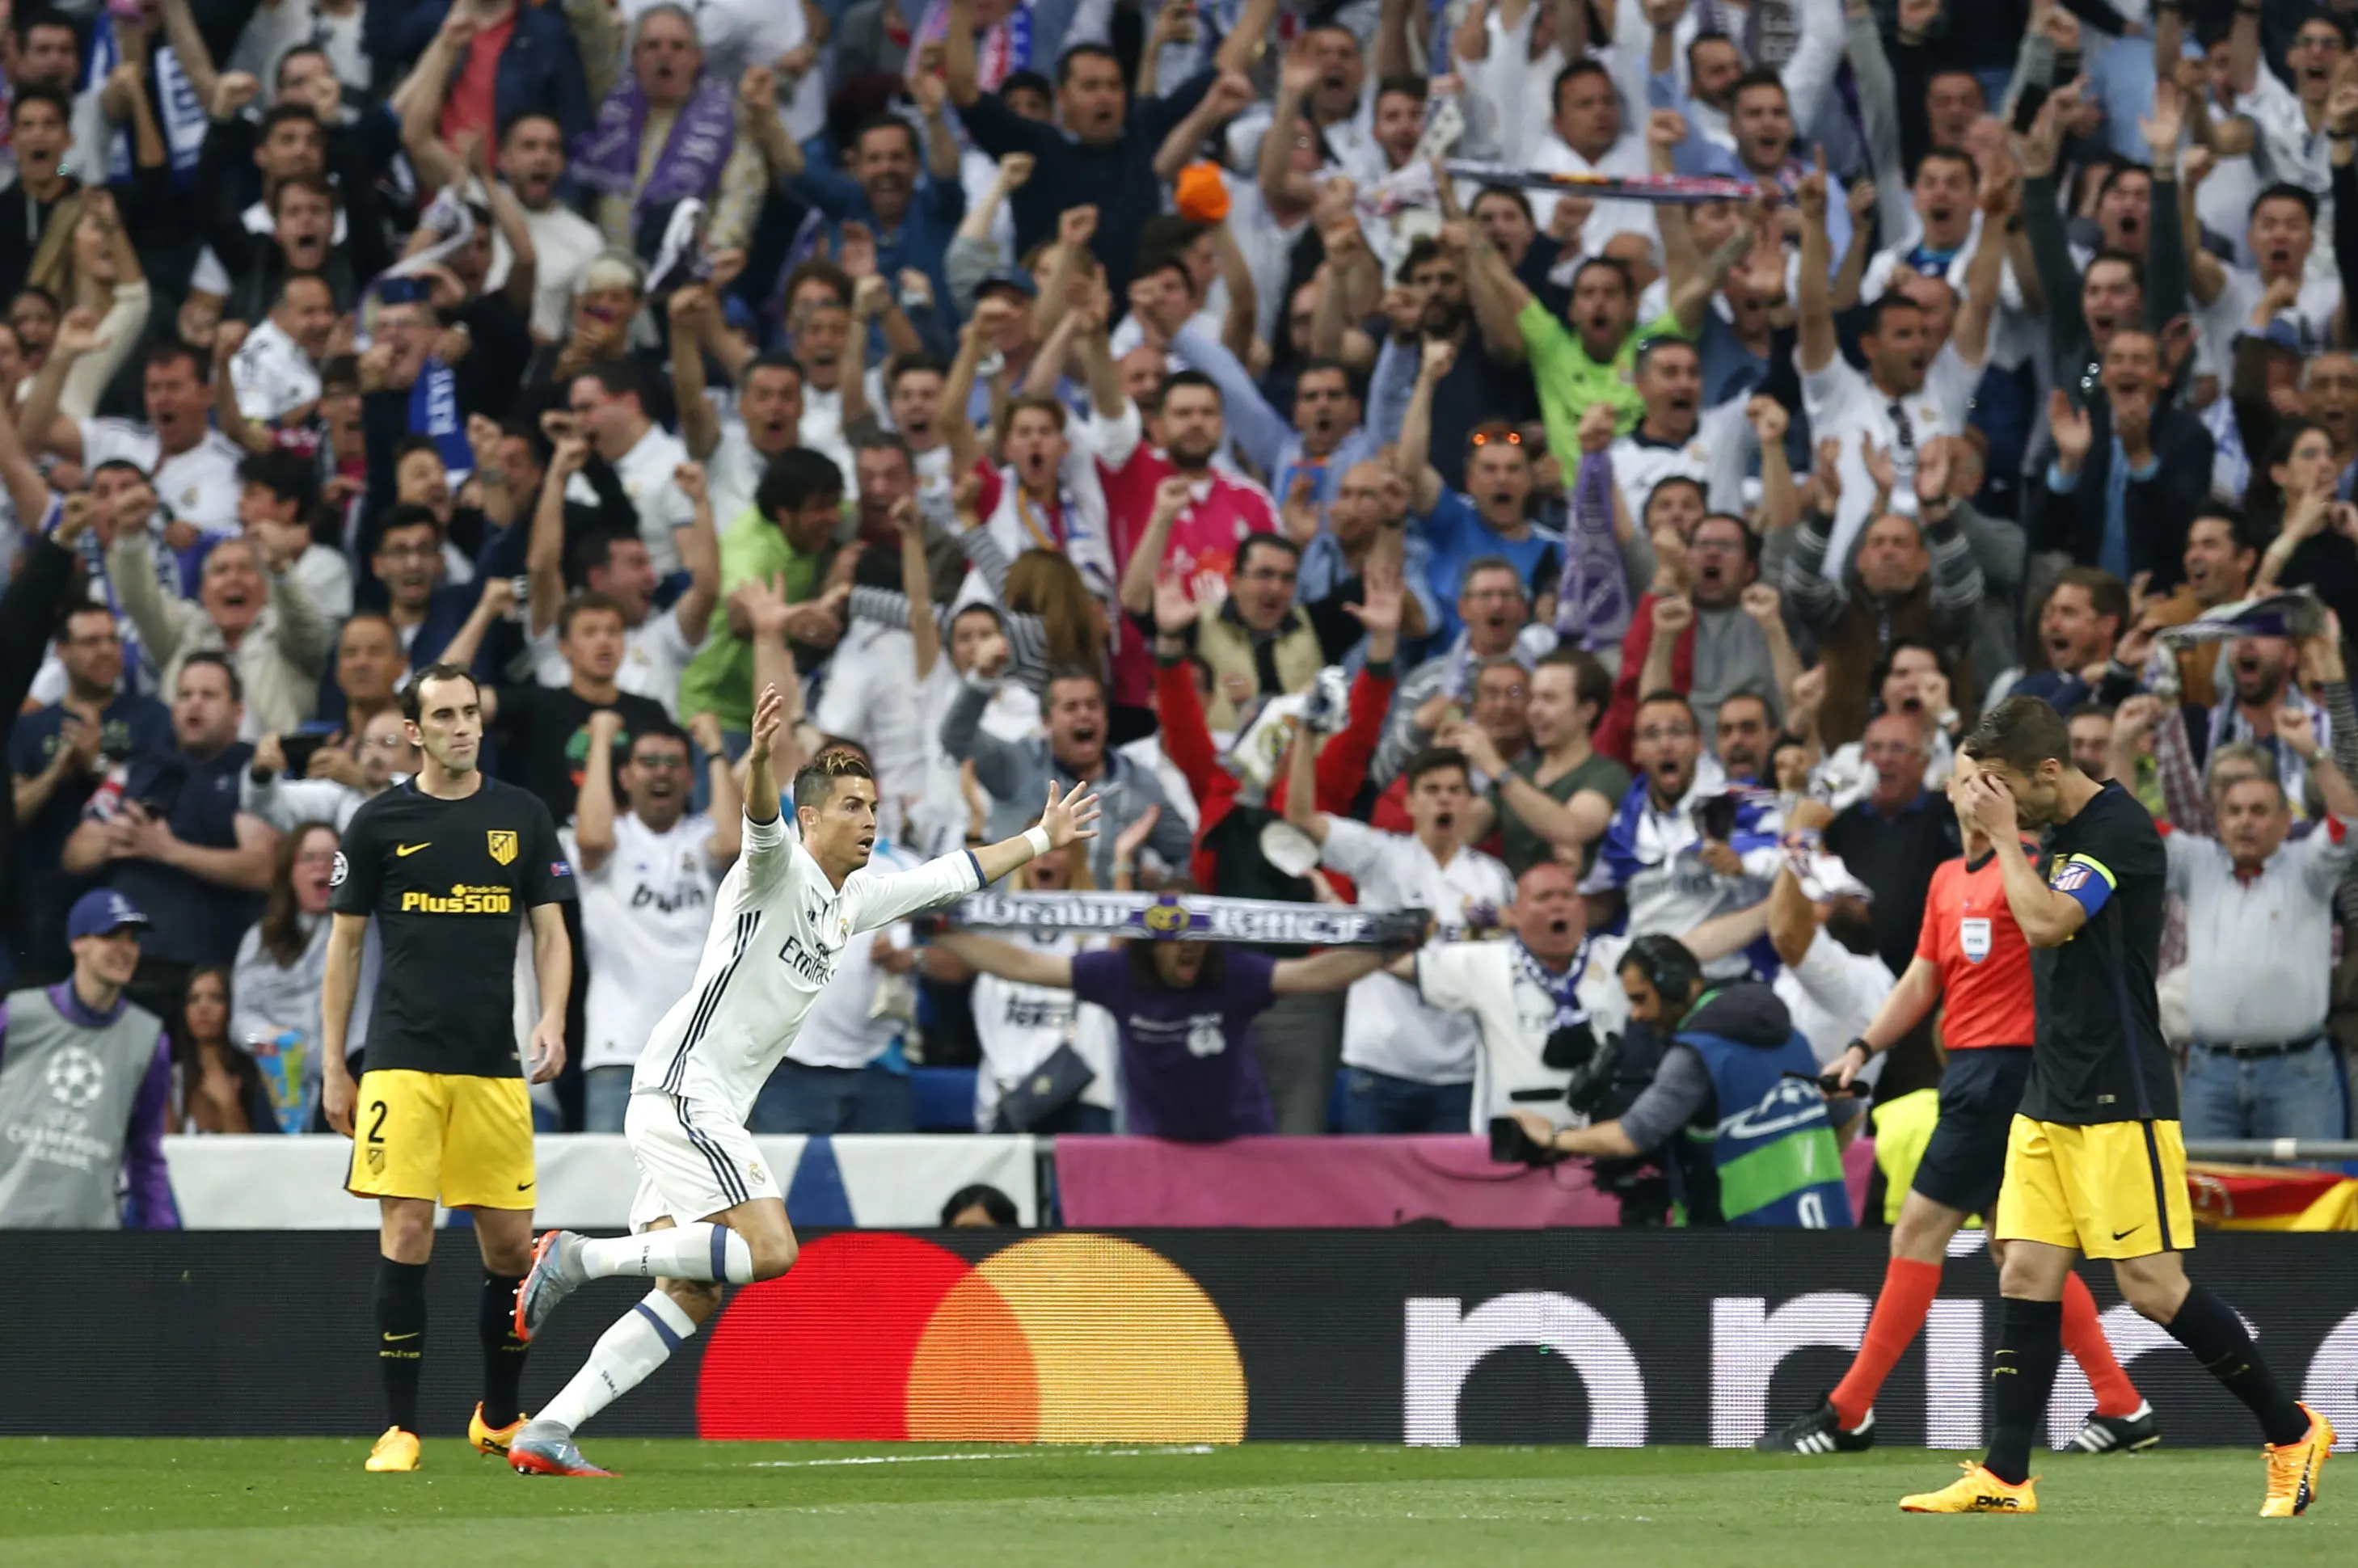 Bintang Real Madrid Cristiano Ronaldo (dua dari kiri) merayakan gol pertamanya ke gawang Atletico Madrid pada leg pertama semifinal Liga Champions di Estadio Santiago Bernabeu, Rabu (3/5/2017) dinihari WIB. (AP Photo/Francisco Seco)